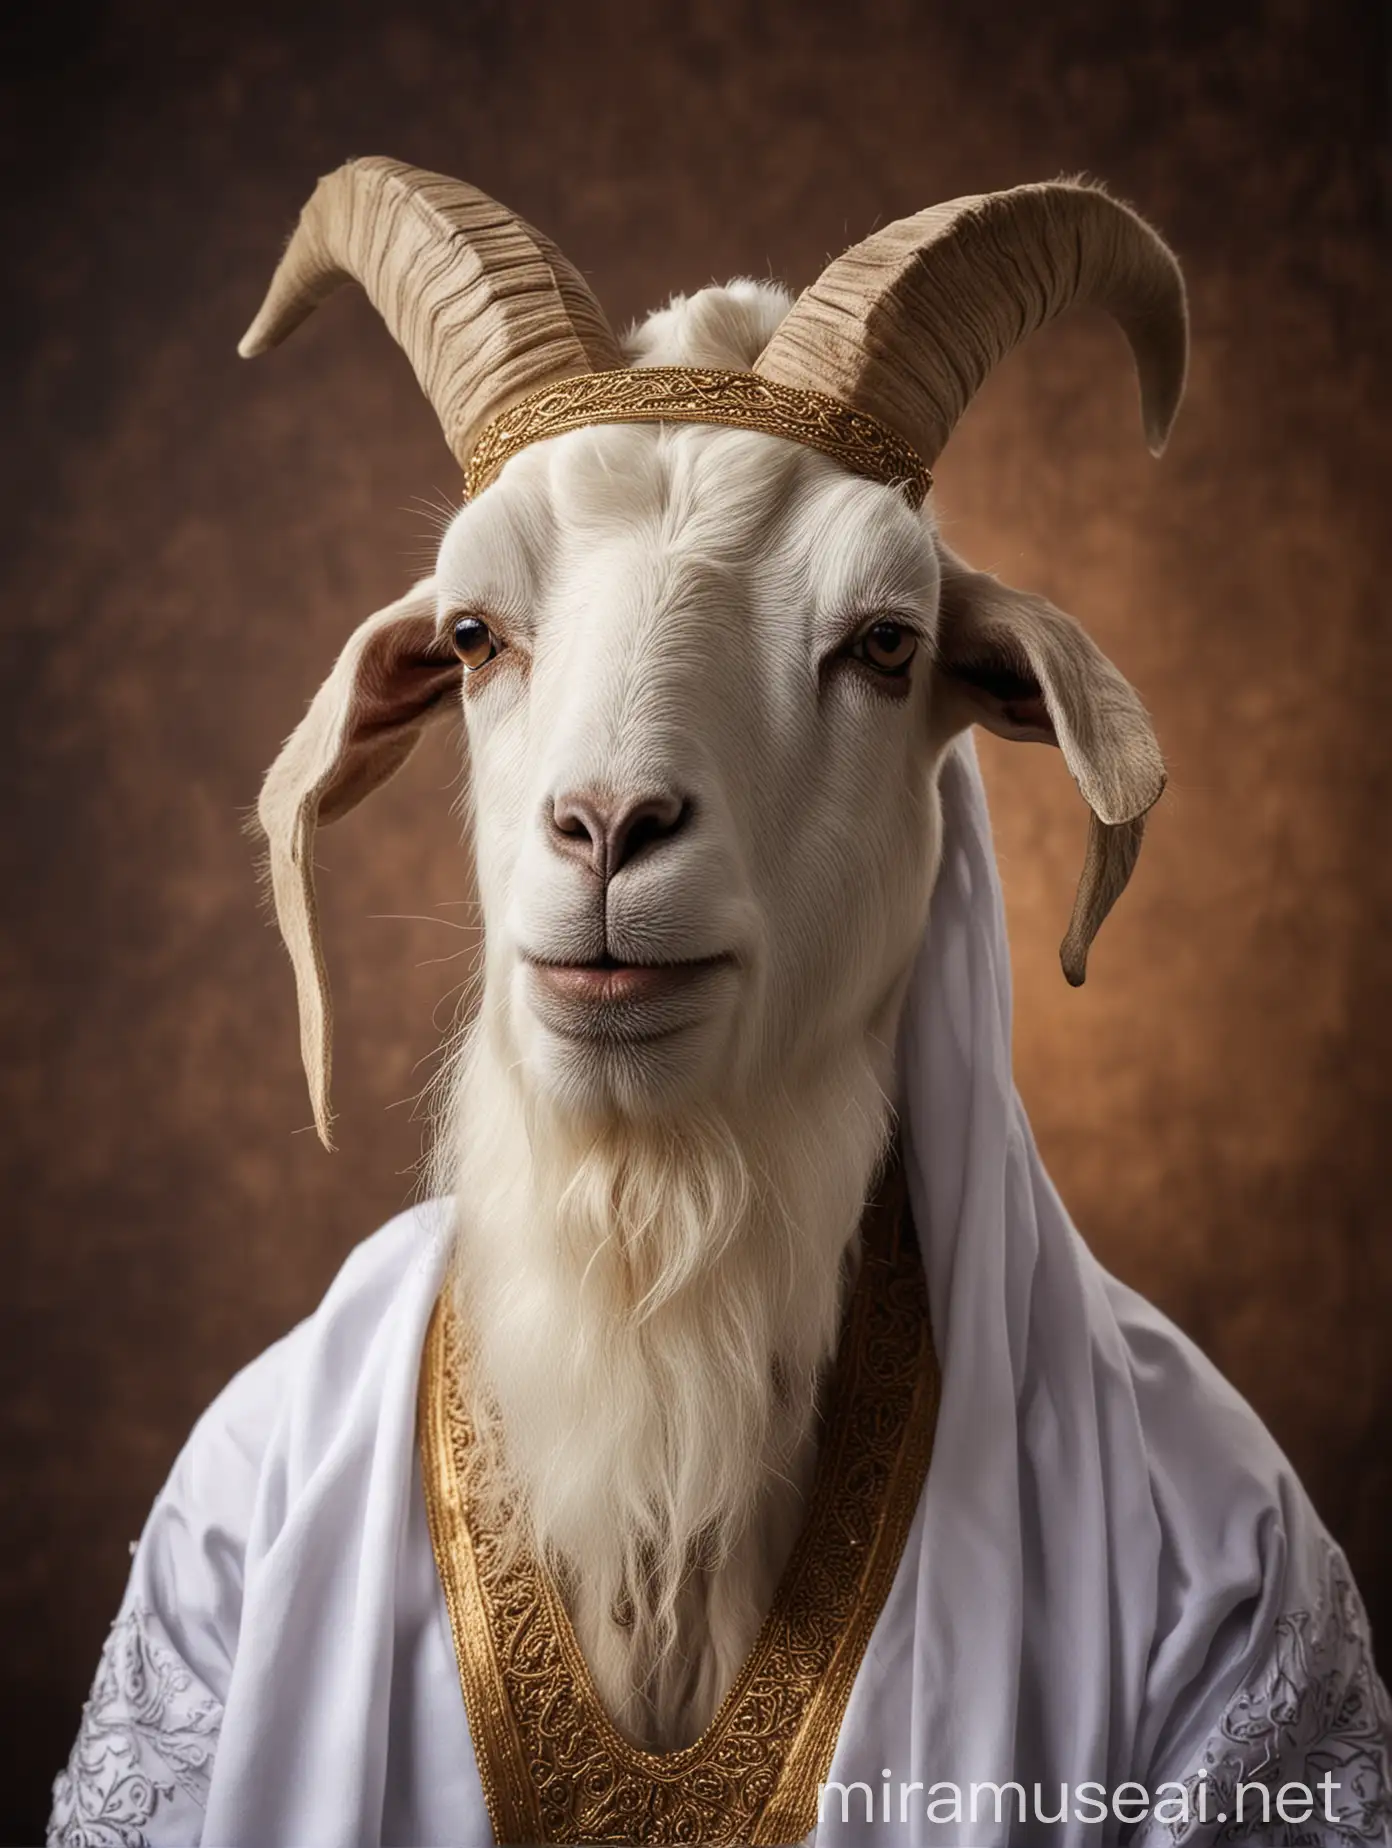 A Muslim goat has a sheikh's beard dressed as a sheikh with dark color eid al adha background.